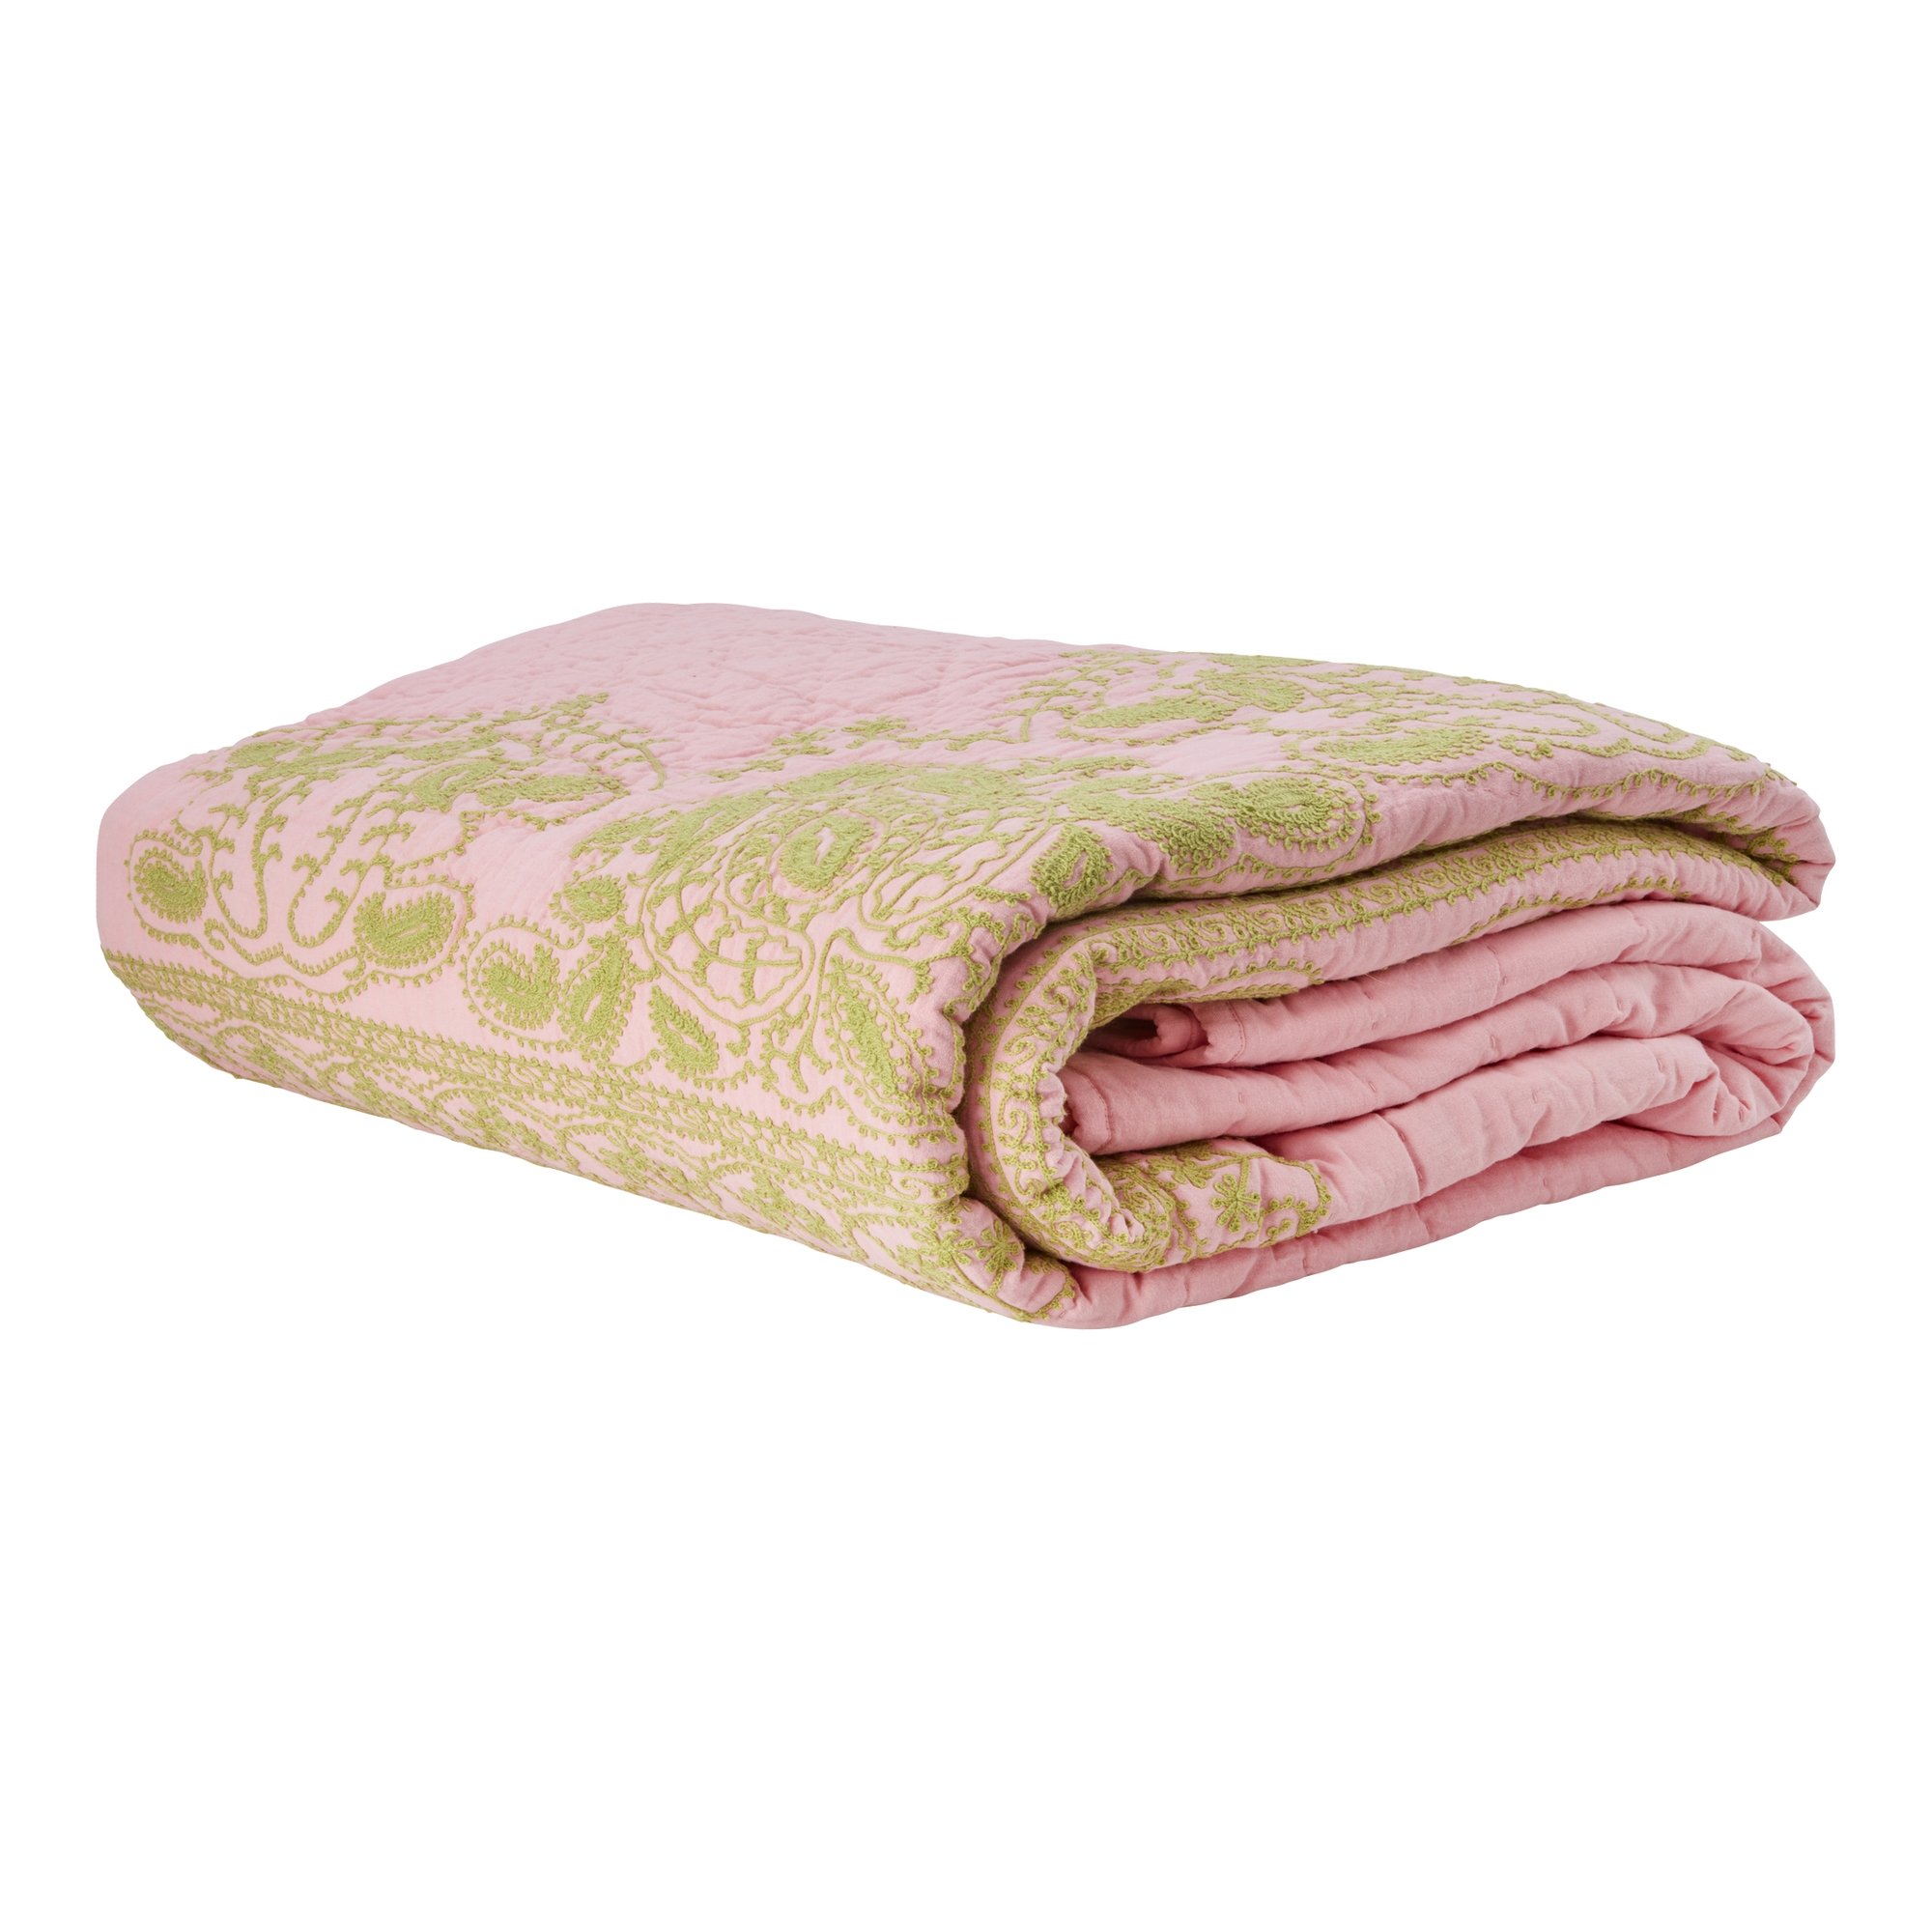 Rice - Cotton Quilt Bedspread in Soft Pink with Green Embroidery - Hjemme og kjøkken